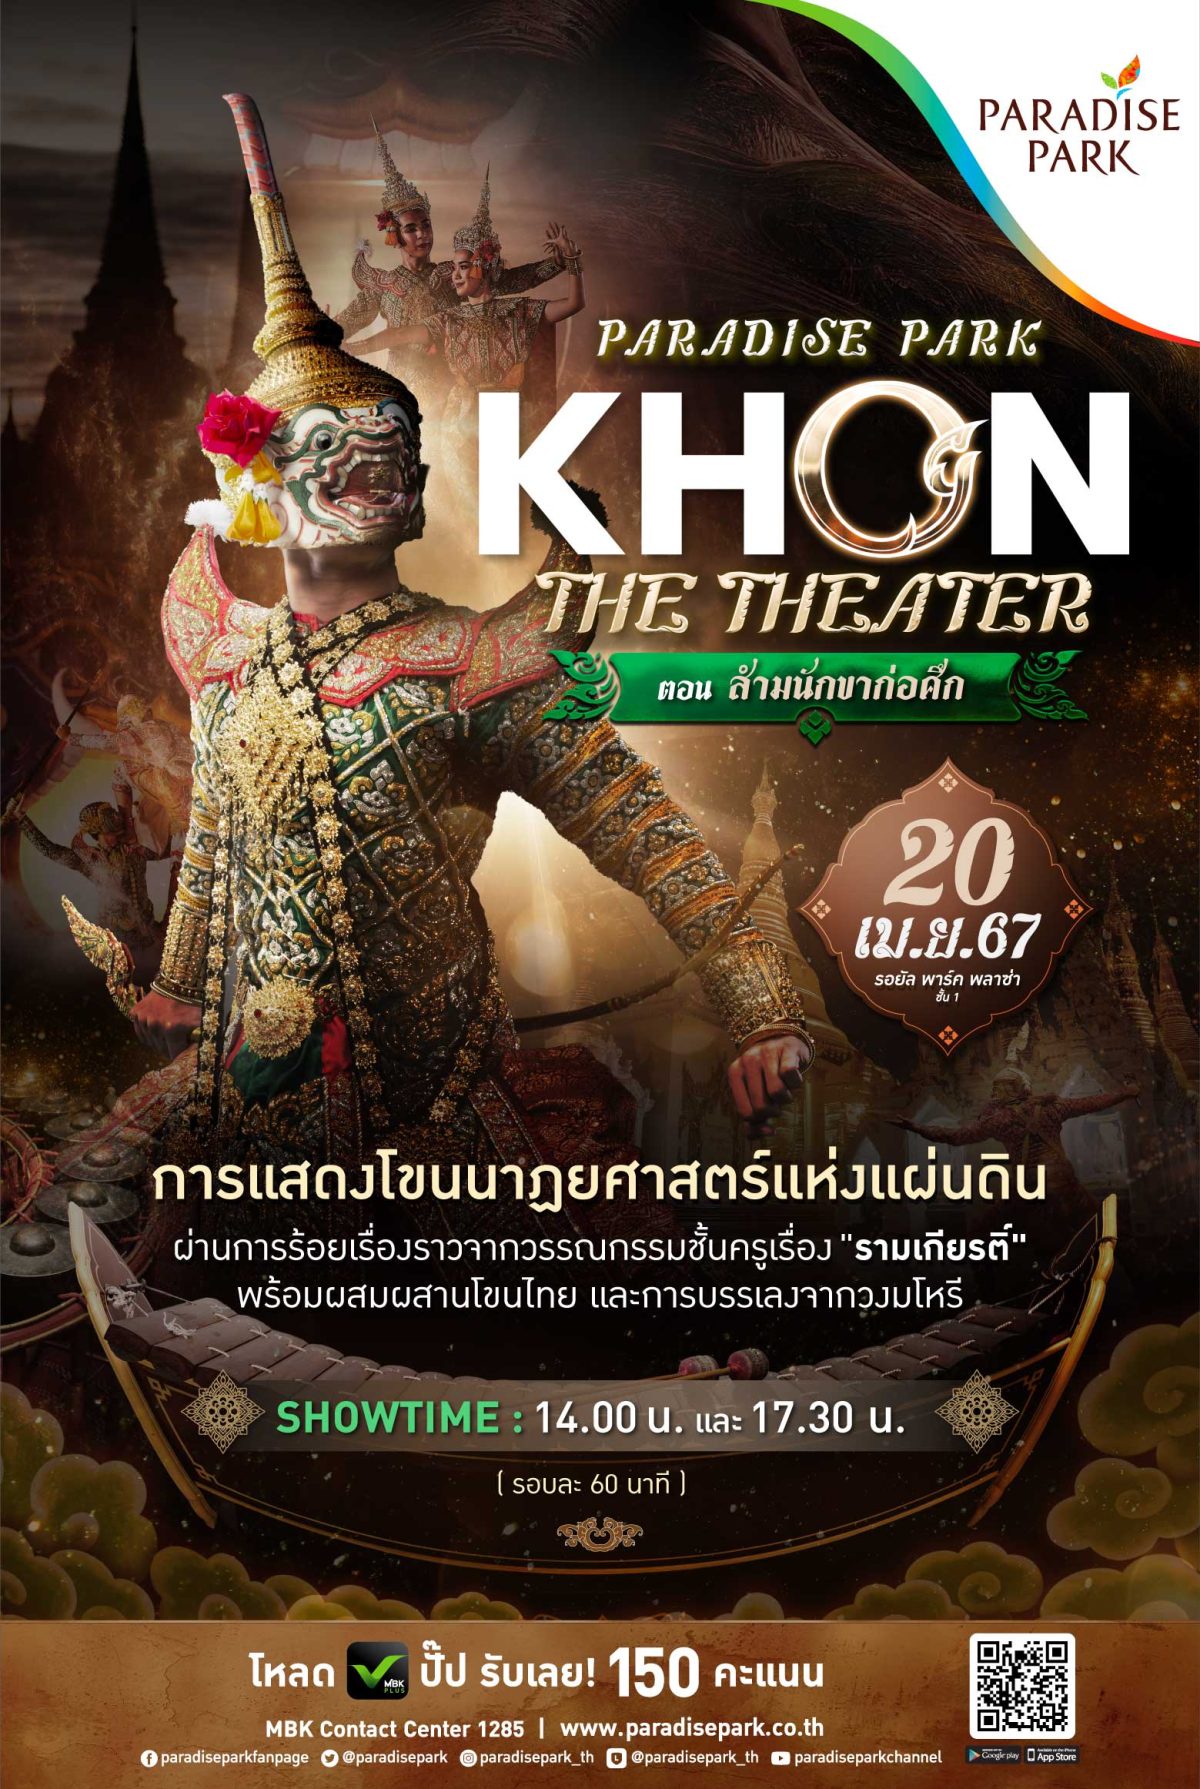 20 เม.ย. นี้ พาราไดซ์ พาร์ค ชวนคุณมาตระตากับการแสดงสุดยิ่งใหญ่ สัมผัสมรดกภูมิปัญญาไทย โขนนาฏยศาสตร์แห่งแผ่นดิน PARADISE PARK KHON THE THEATER